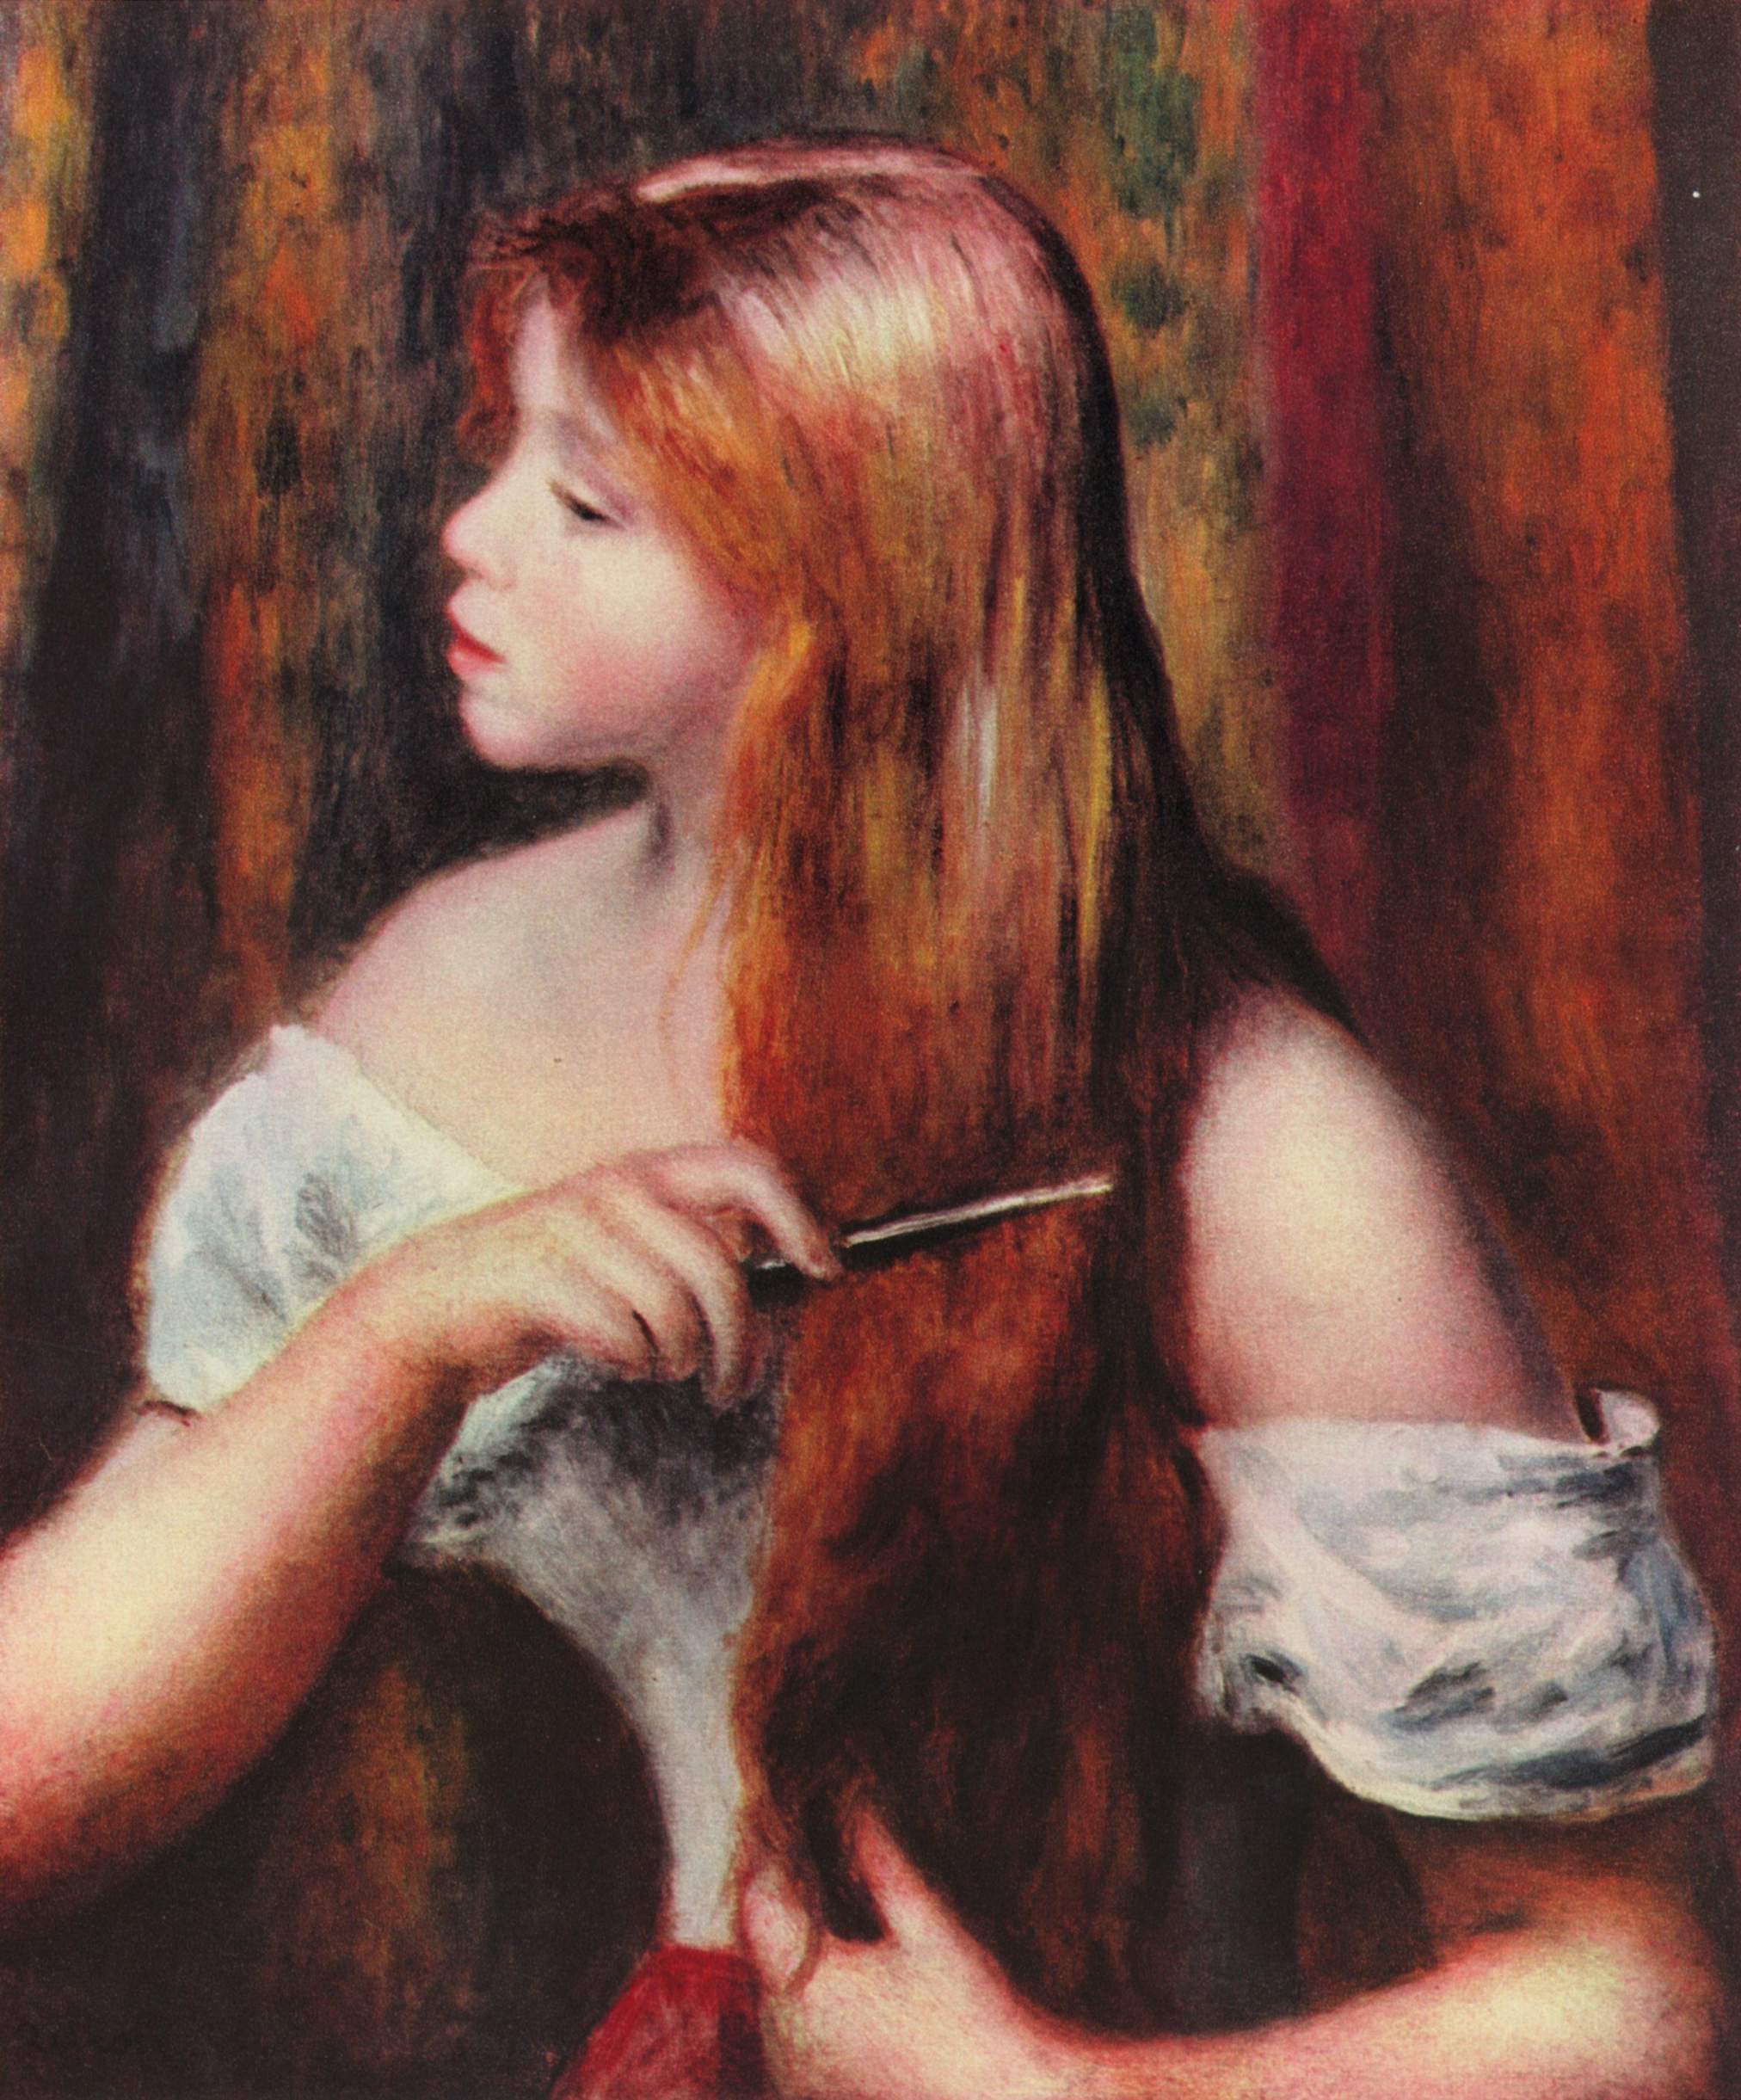 小女孩梳头 by 皮埃尔-奥古斯特· 雷诺阿 - 1894 - 53 × 44 cm 